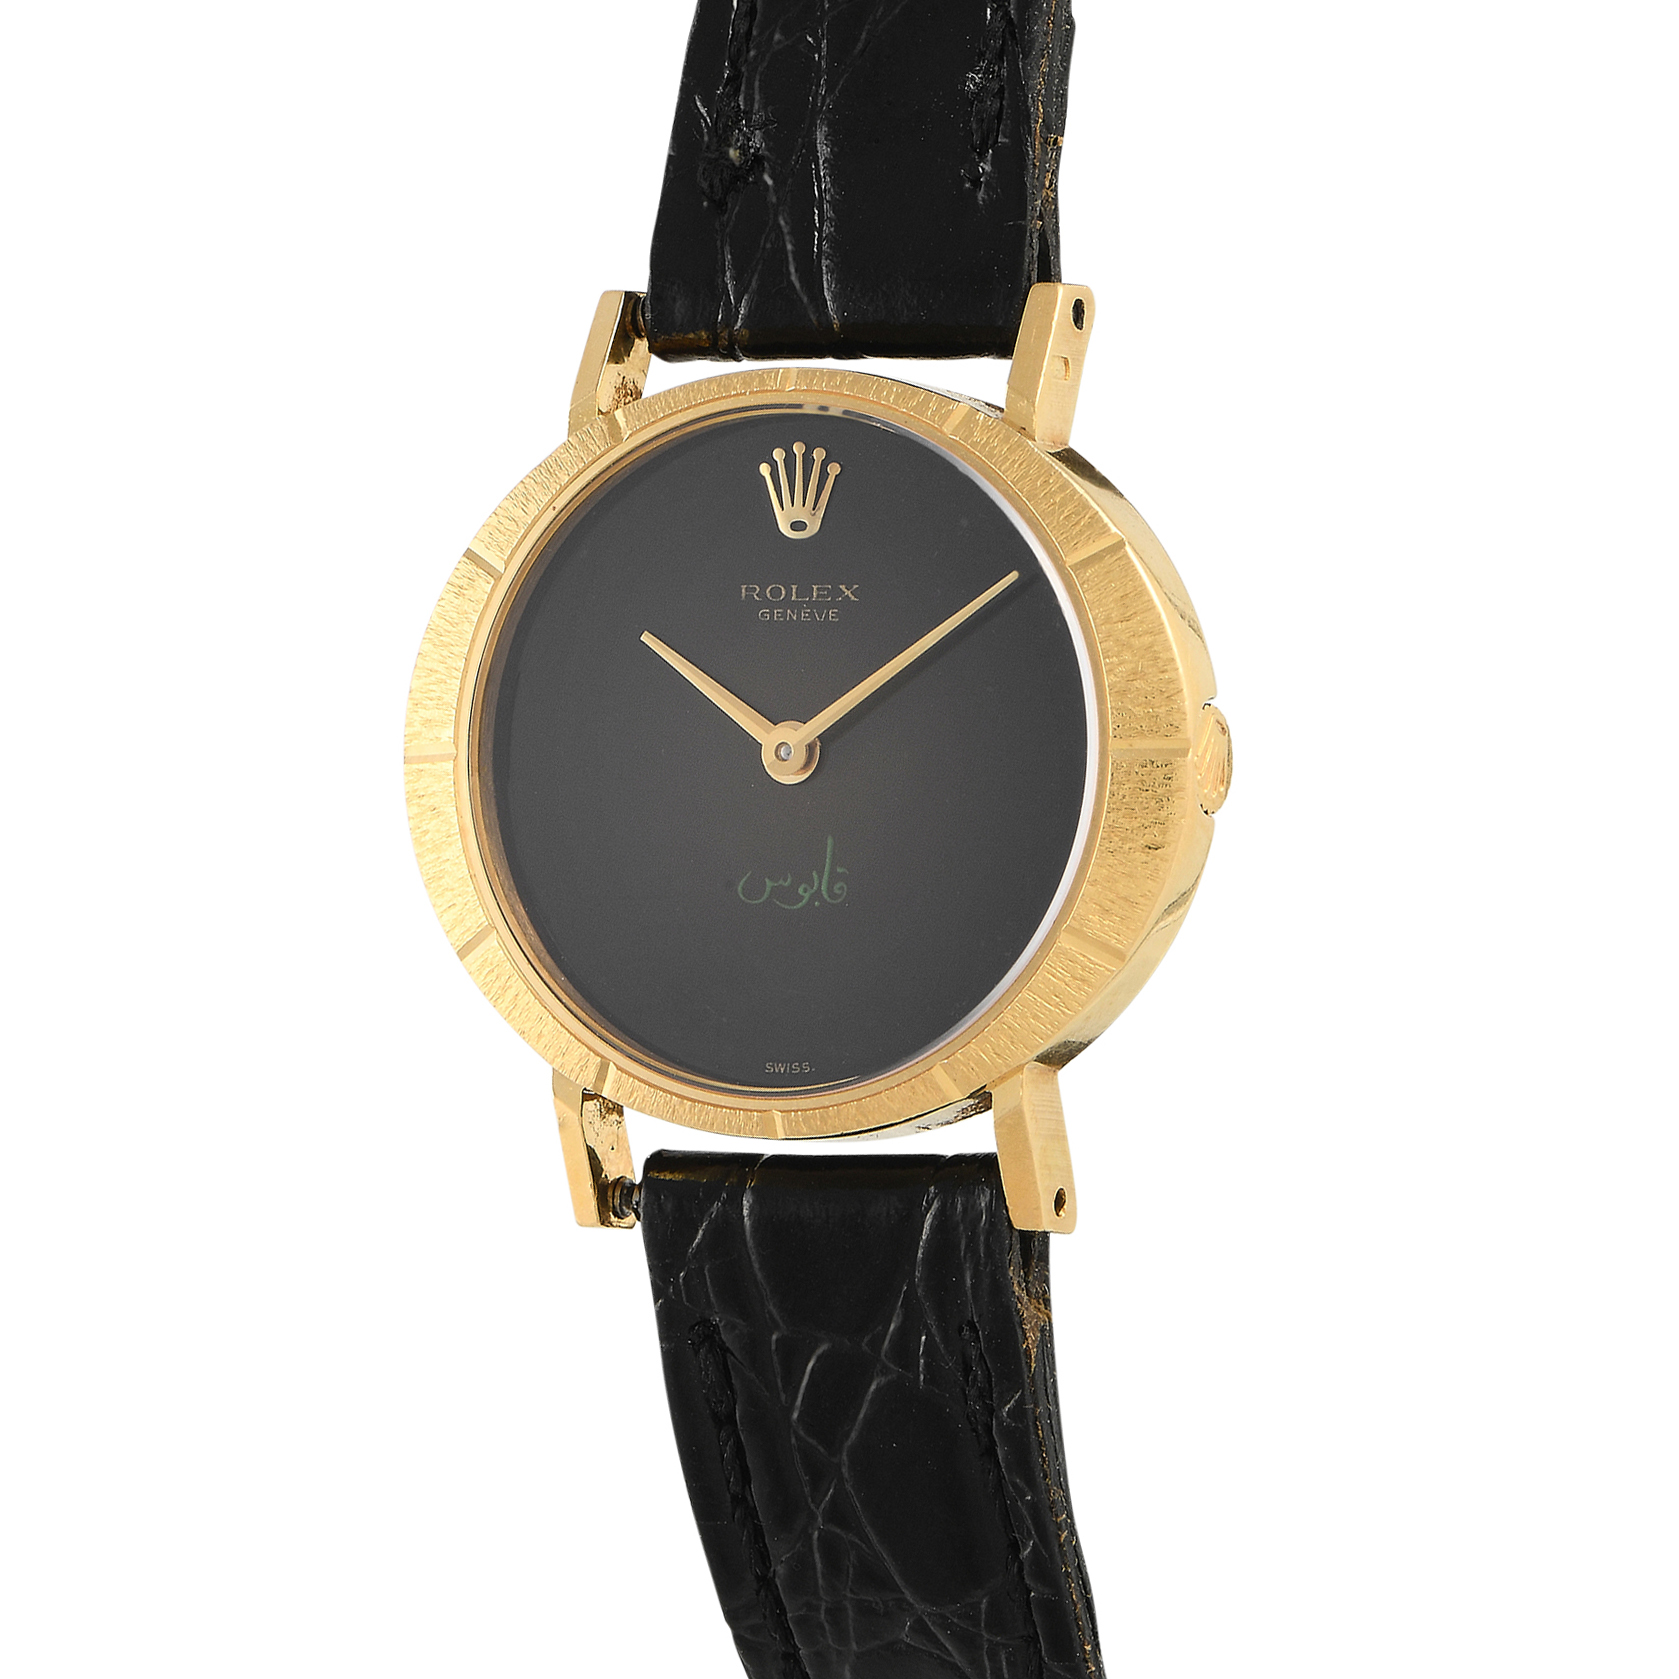 Rolex Vintage Cellini 18K Yellow Gold Vignette Dial Watch